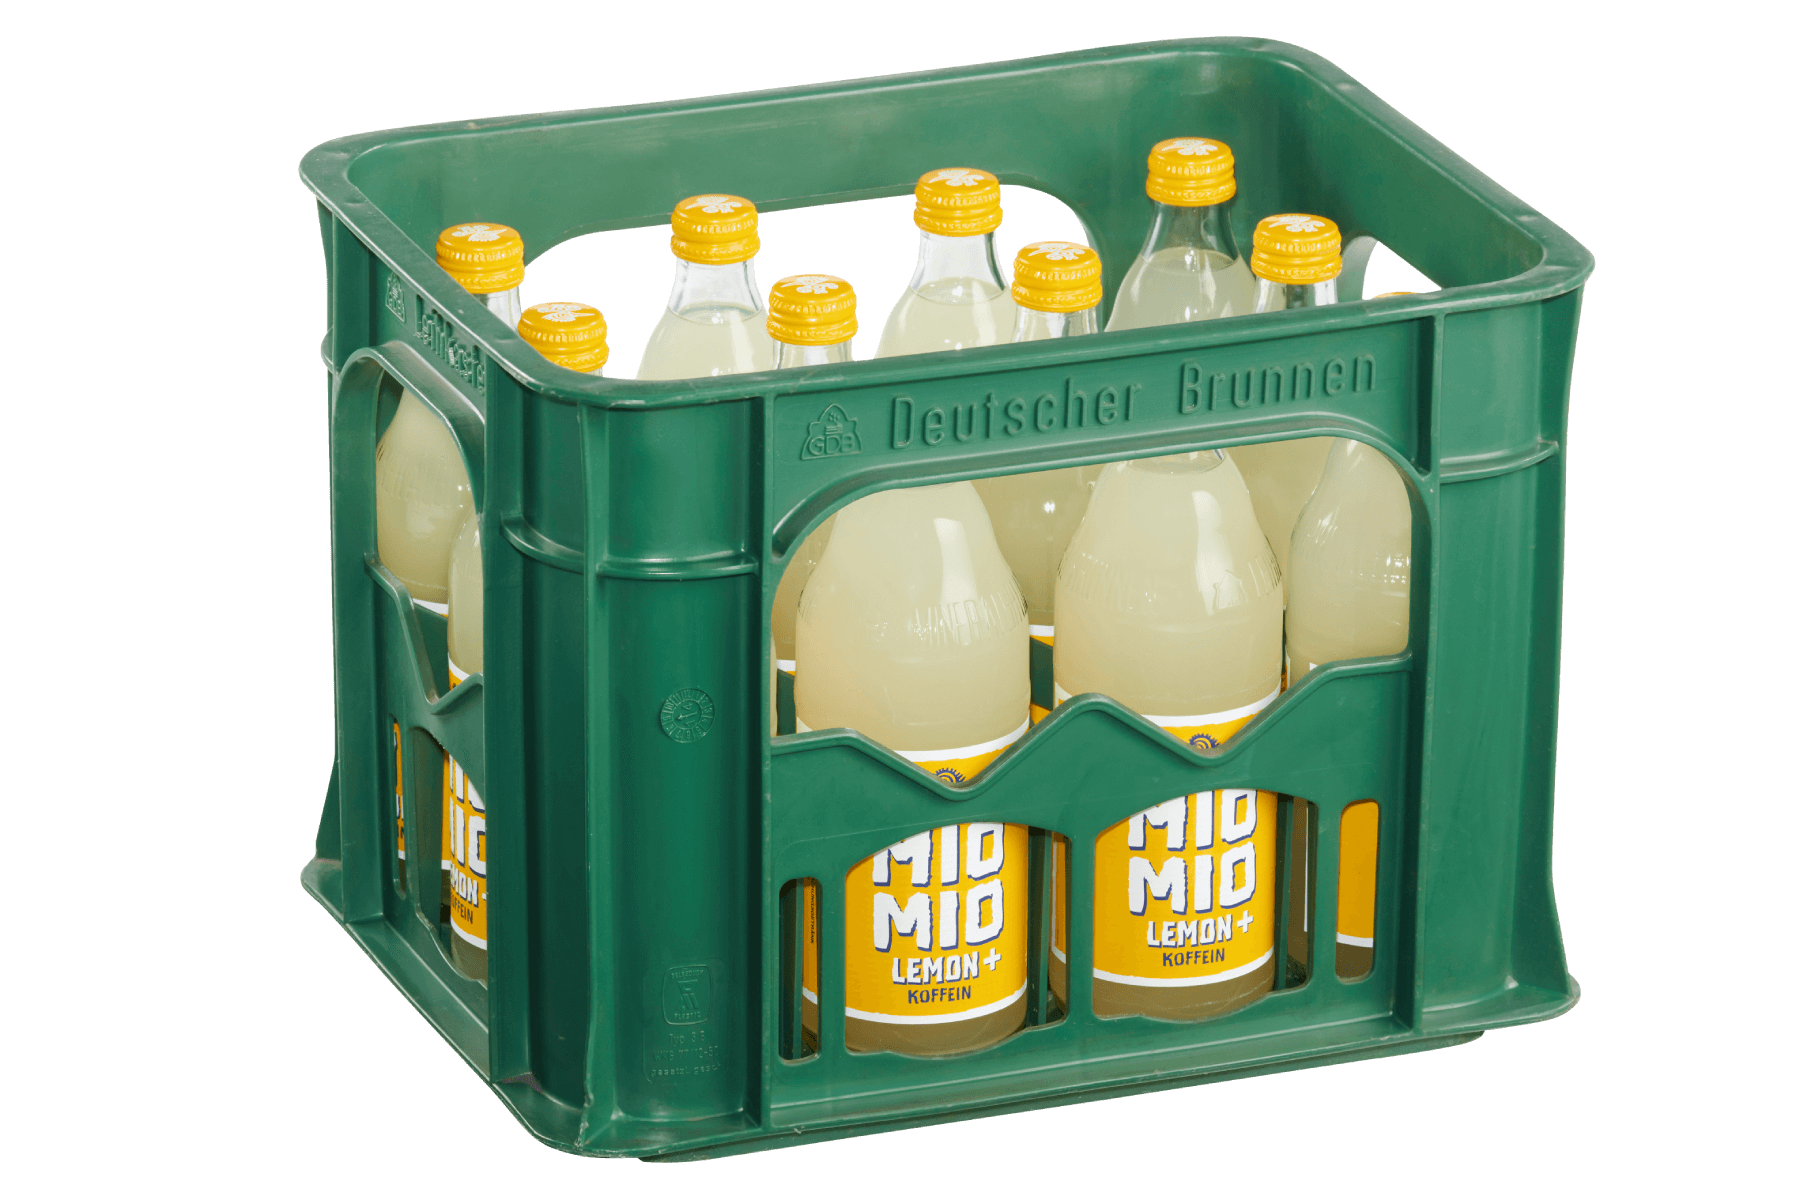 Getränkekasten mit zwölf Flaschen Mio Mio Lemon